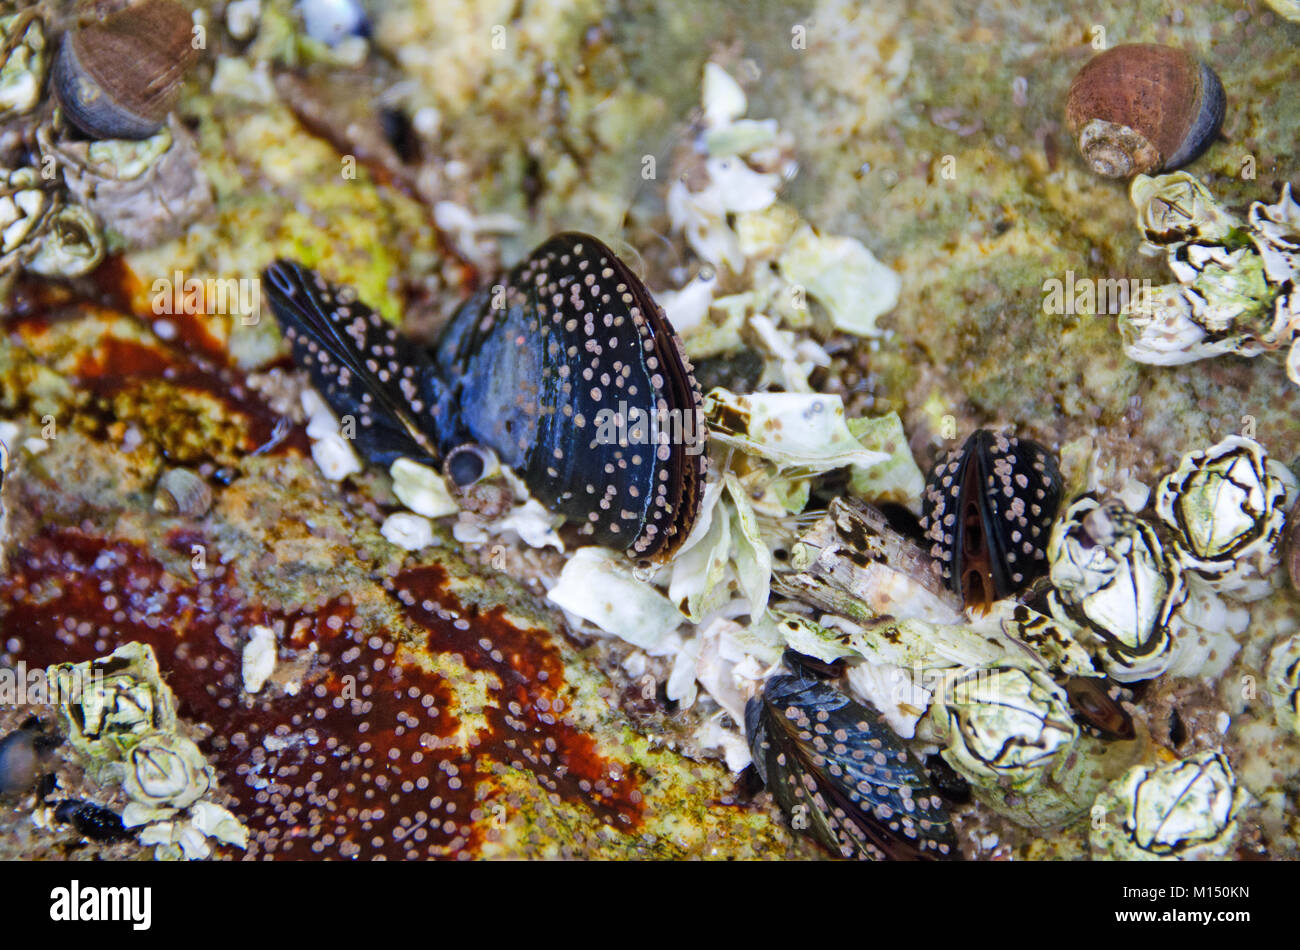 Cyprids (Larvenstadium der barnacle Lebenszyklus) Einstellung auf Miesmuscheln (Mytilus edulis) in einer tide pool auf großen Kopf, Acadia National Park, Maine Stockfoto